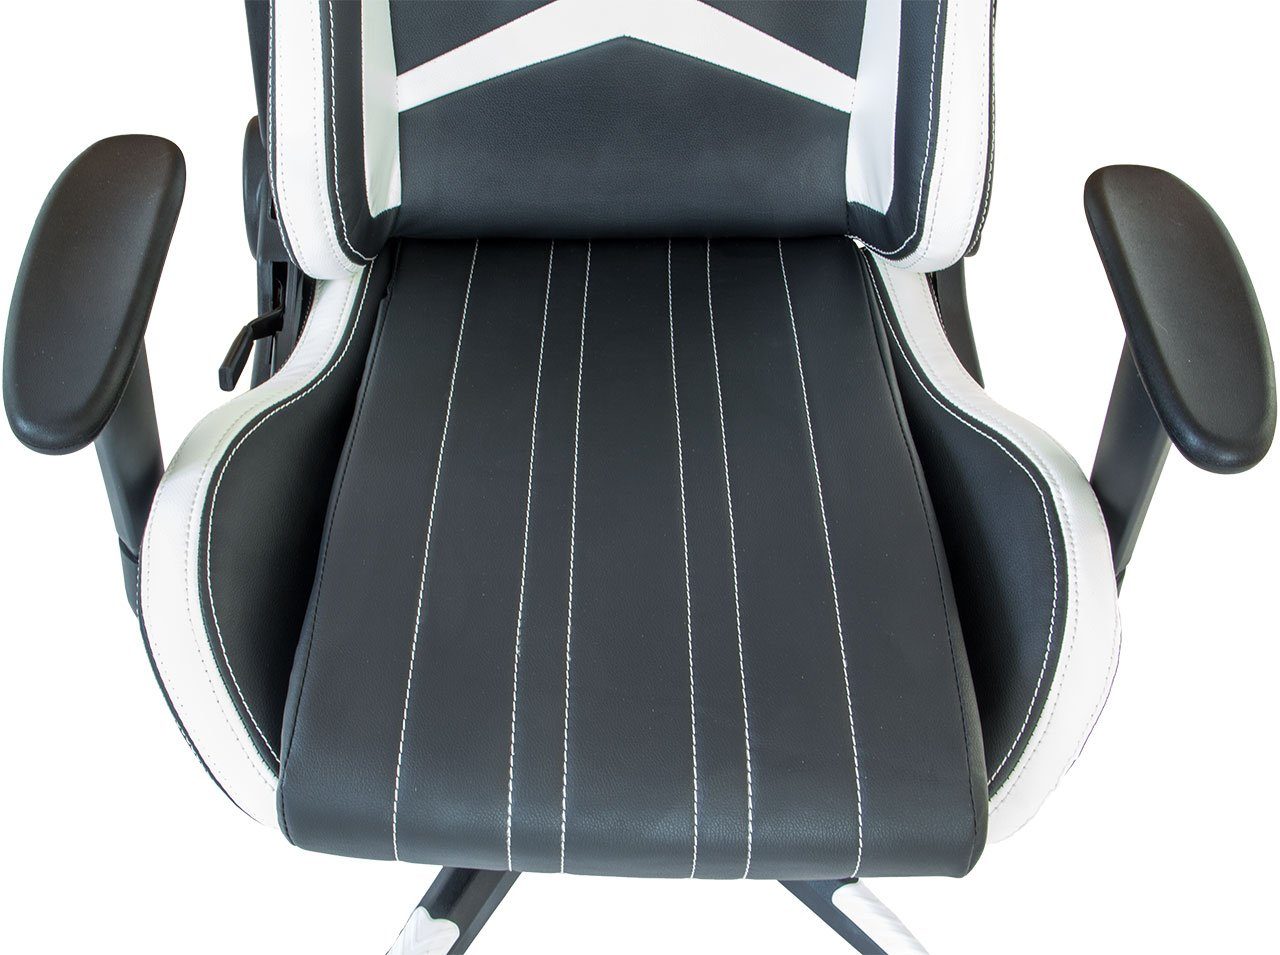 Nacken- (Stück), mit verstellbare weiß-schwarz Design, und Racing Gaming-Stuhl Haushalt Nachen- Rückenkissen Rückenlehne, Wipp-Mechanismus verstellbar, NATIV und Rückenkissen Gaming-Stuhl